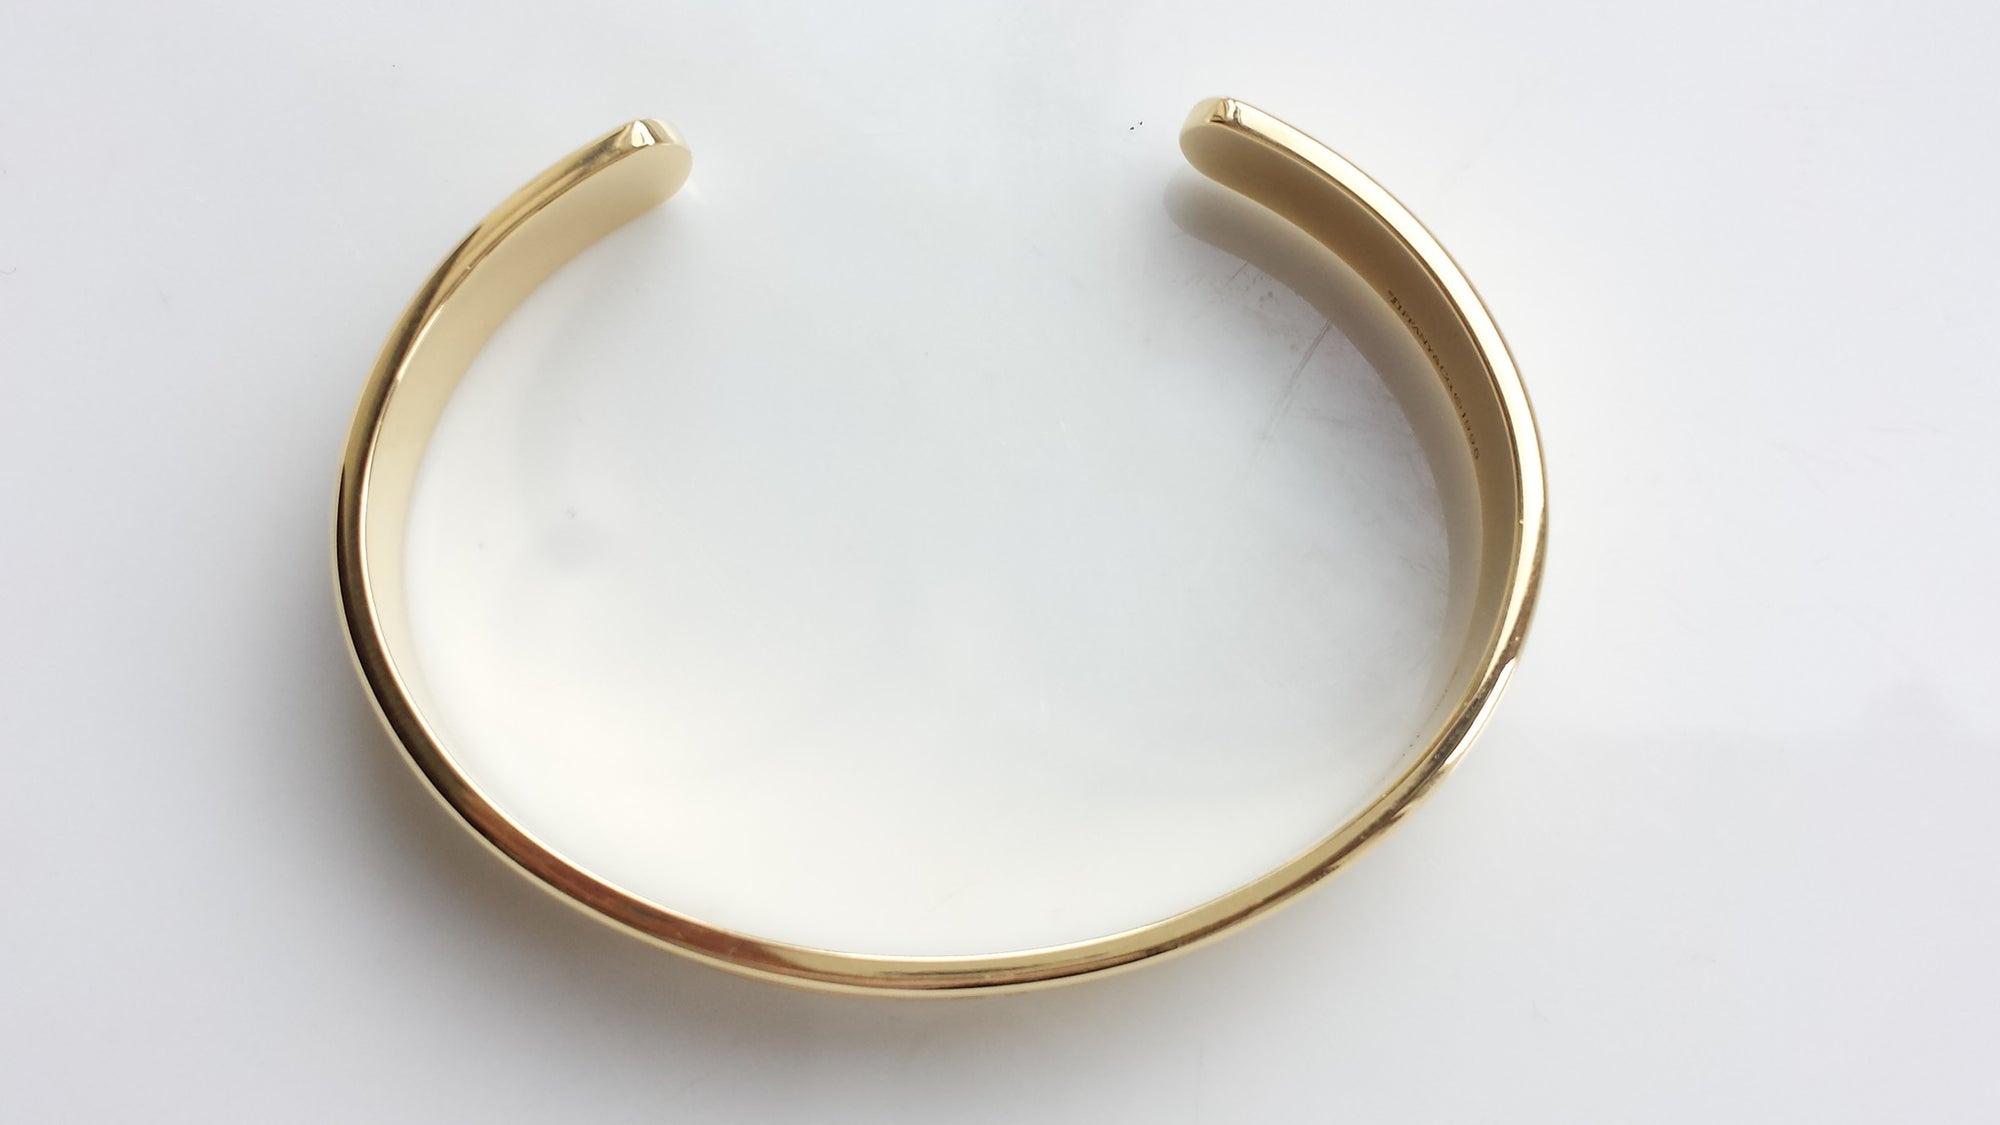 Tiffany & Co. Atlas Open Cuff Bracelet / Bangle in 18K Yellow Gold